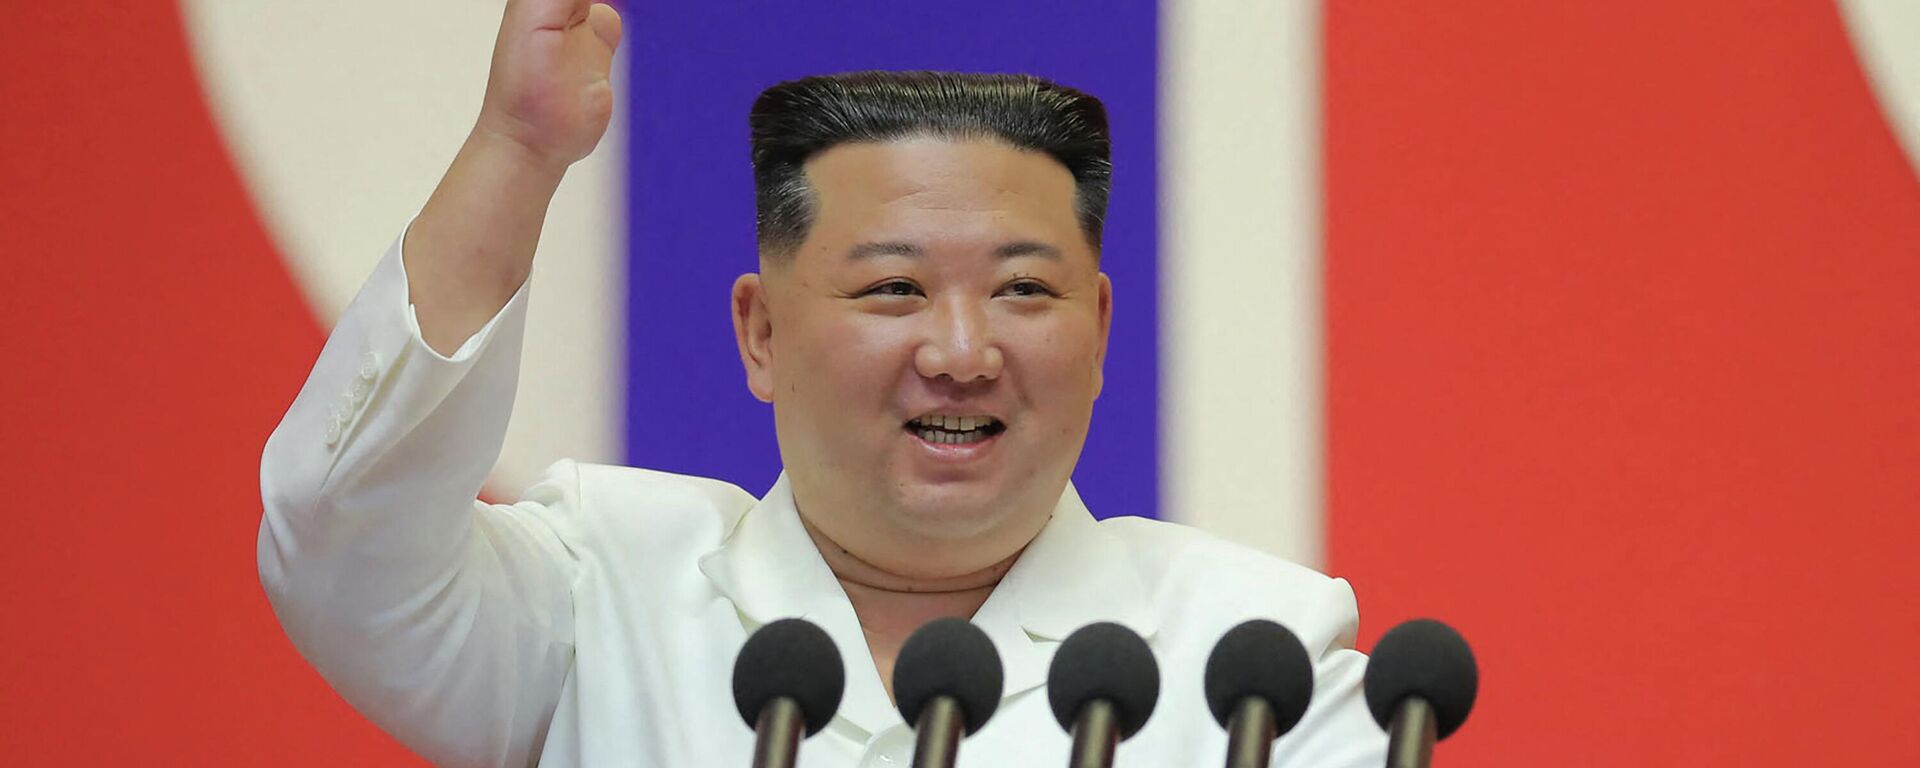 زعيم كوريا الشمالية، كيم جونغ أون، يلقي خطابا لتهنئة أعضاء القسم الطبي العسكري بالجيش الشعبي الكوري على المساهمة في منع انتشار (كوفيد-19) في بيونغ يانغ، 18 أغسطس/ آب 2022 - سبوتنيك عربي, 1920, 07.03.2023